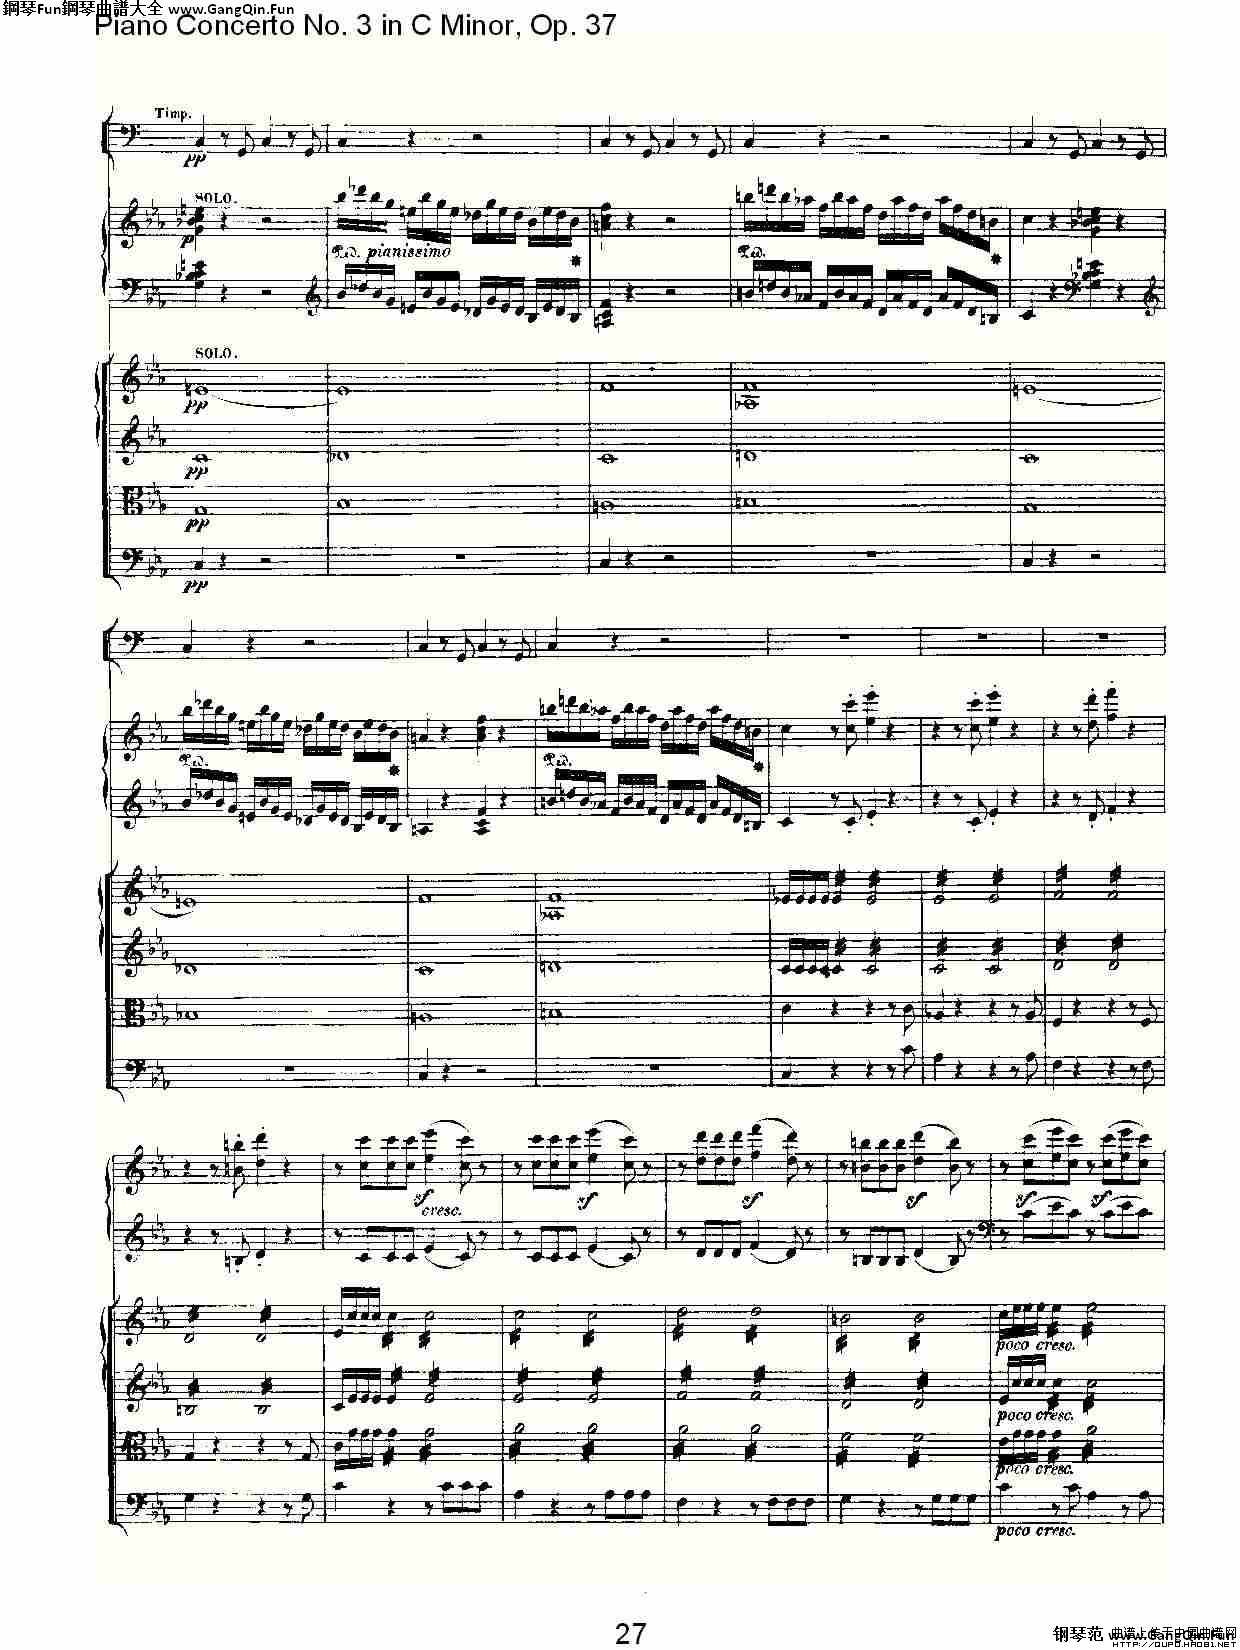 C小調鋼琴第三協奏曲 Op.37  第一樂章_簡譜